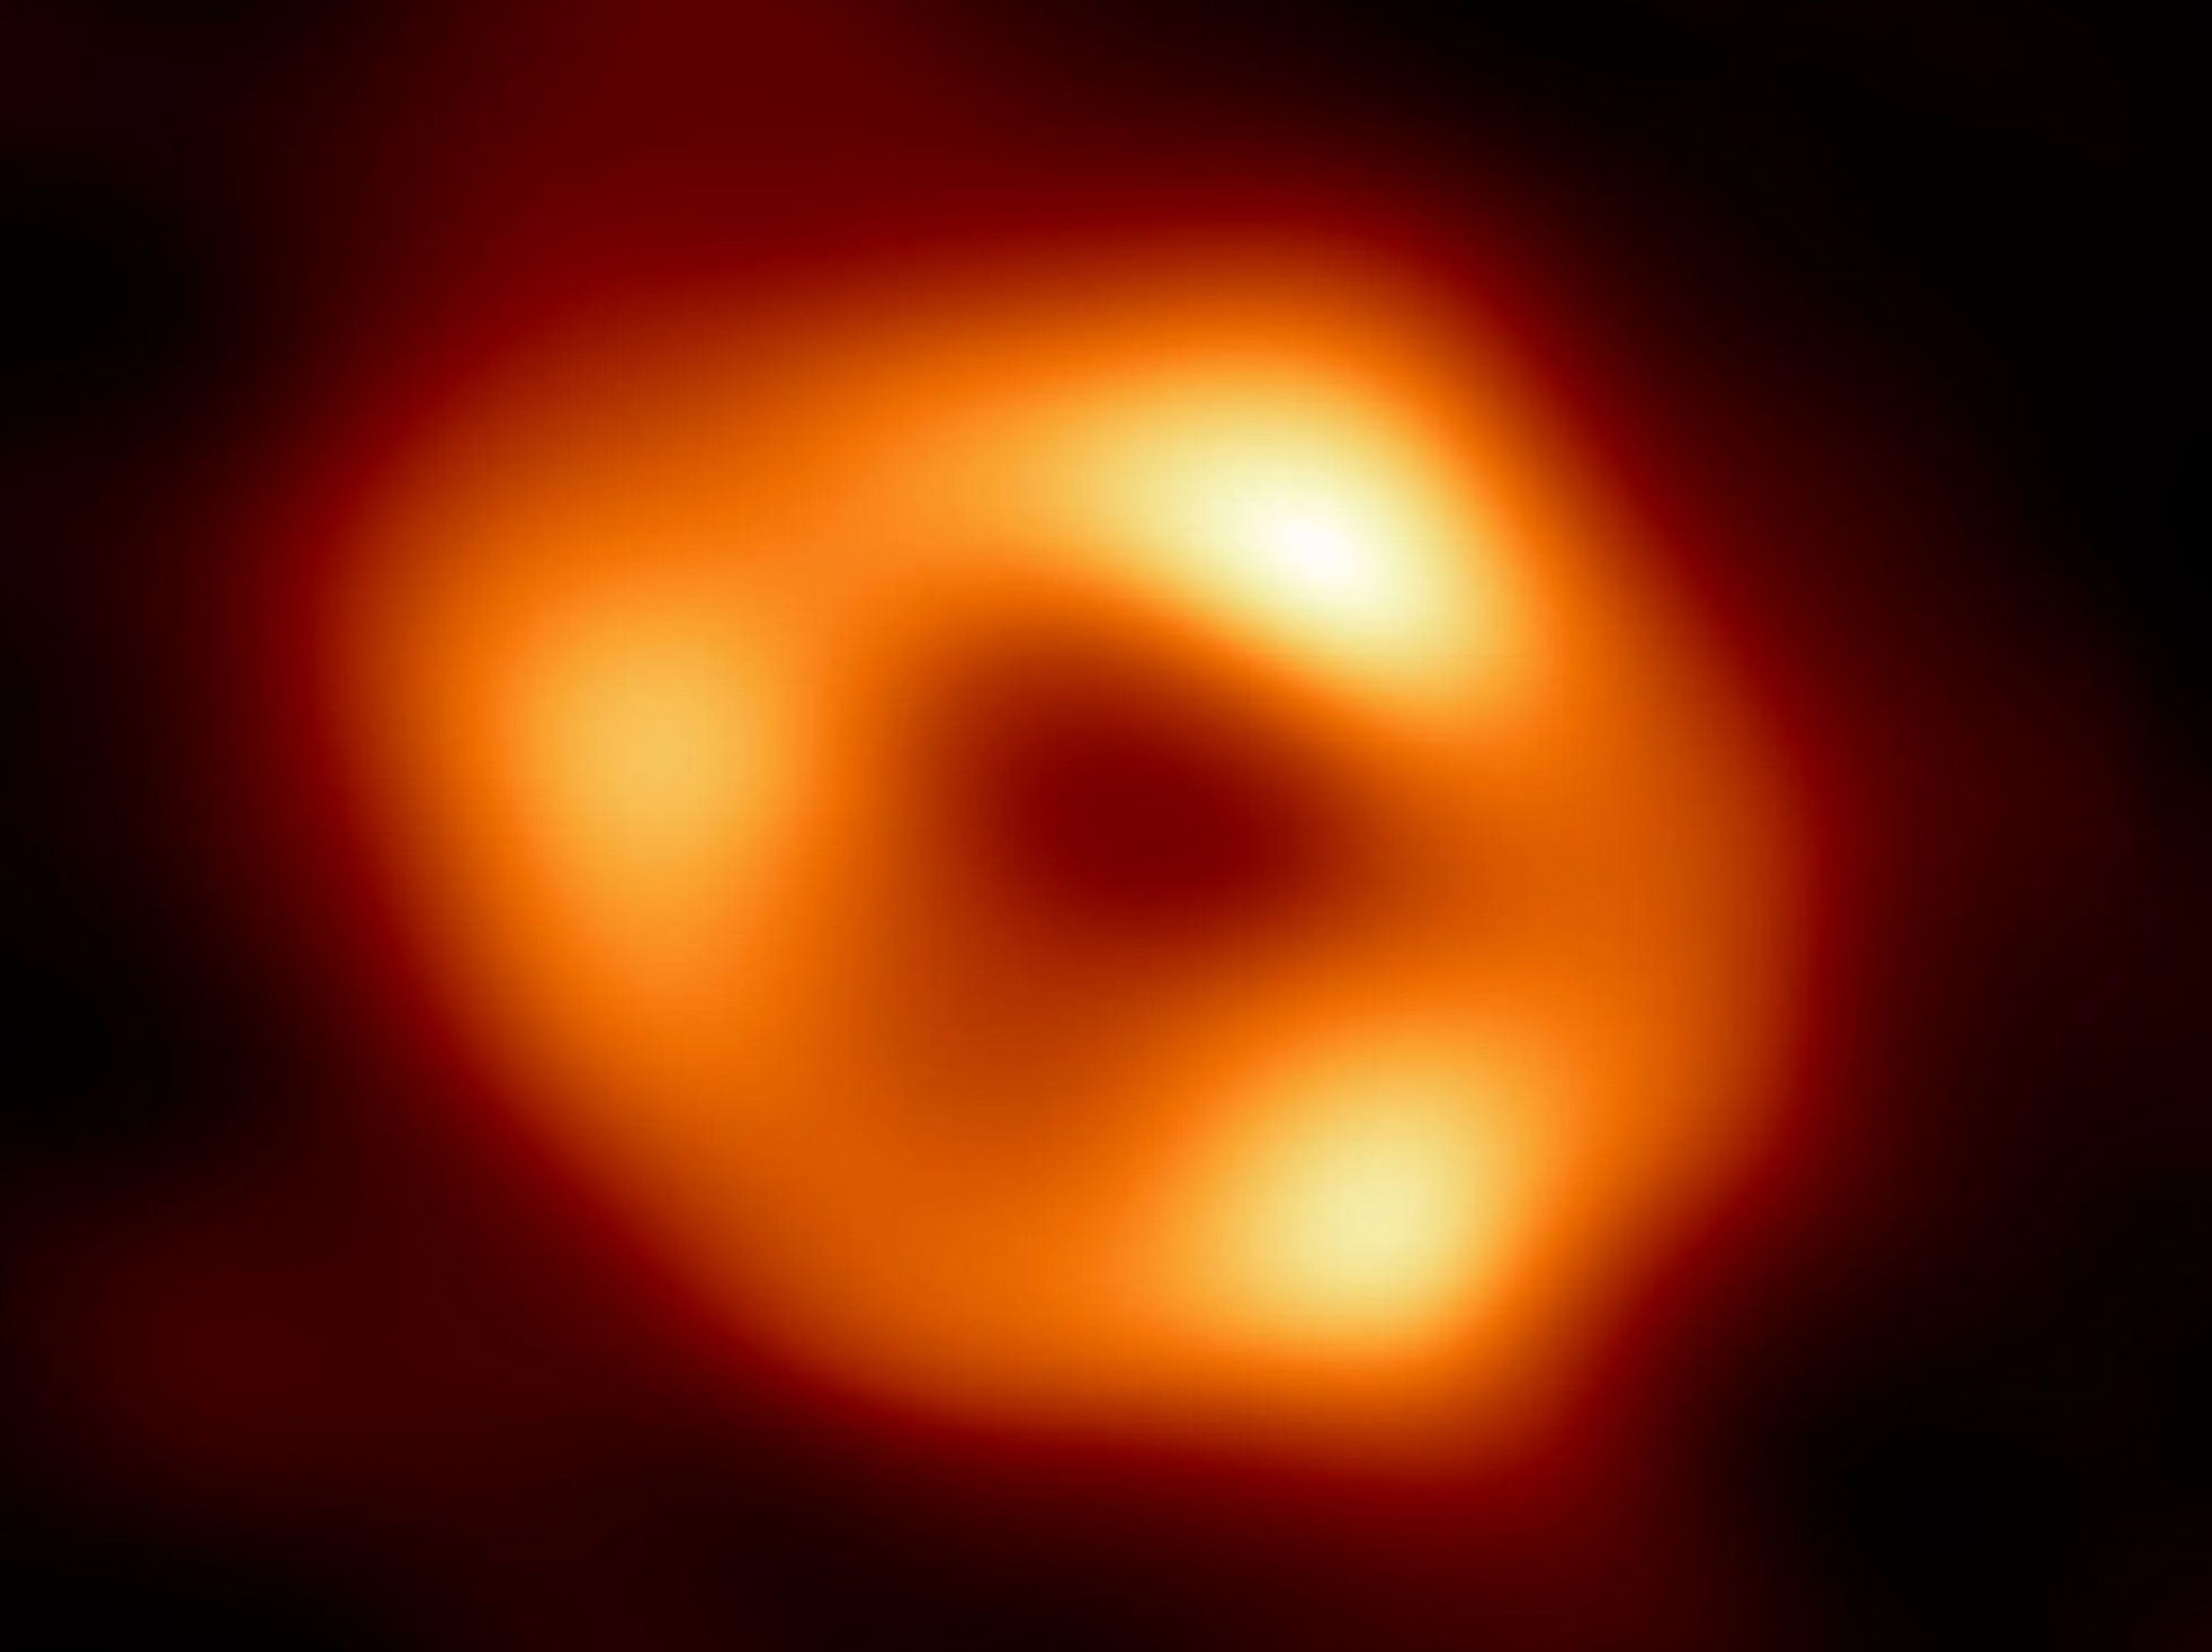 Primera imagen de Sagitario A (Sgr A), el agujero negro supermasivo del centro de nuestra galaxia.